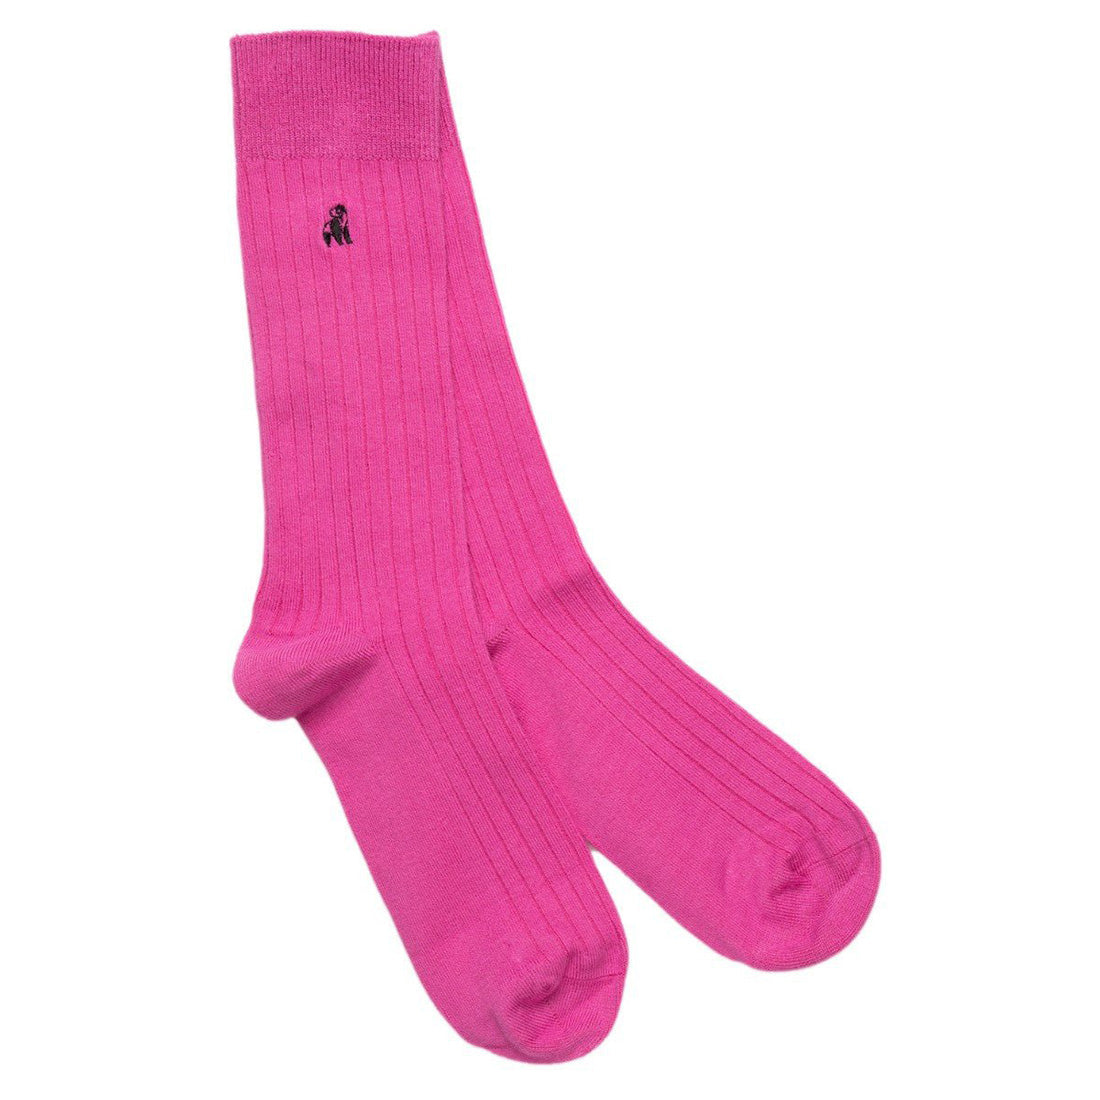 socks-rich-pink-bamboo-socks-1_d9780316-f0bb-4406-8290-c200039a8595.jpg